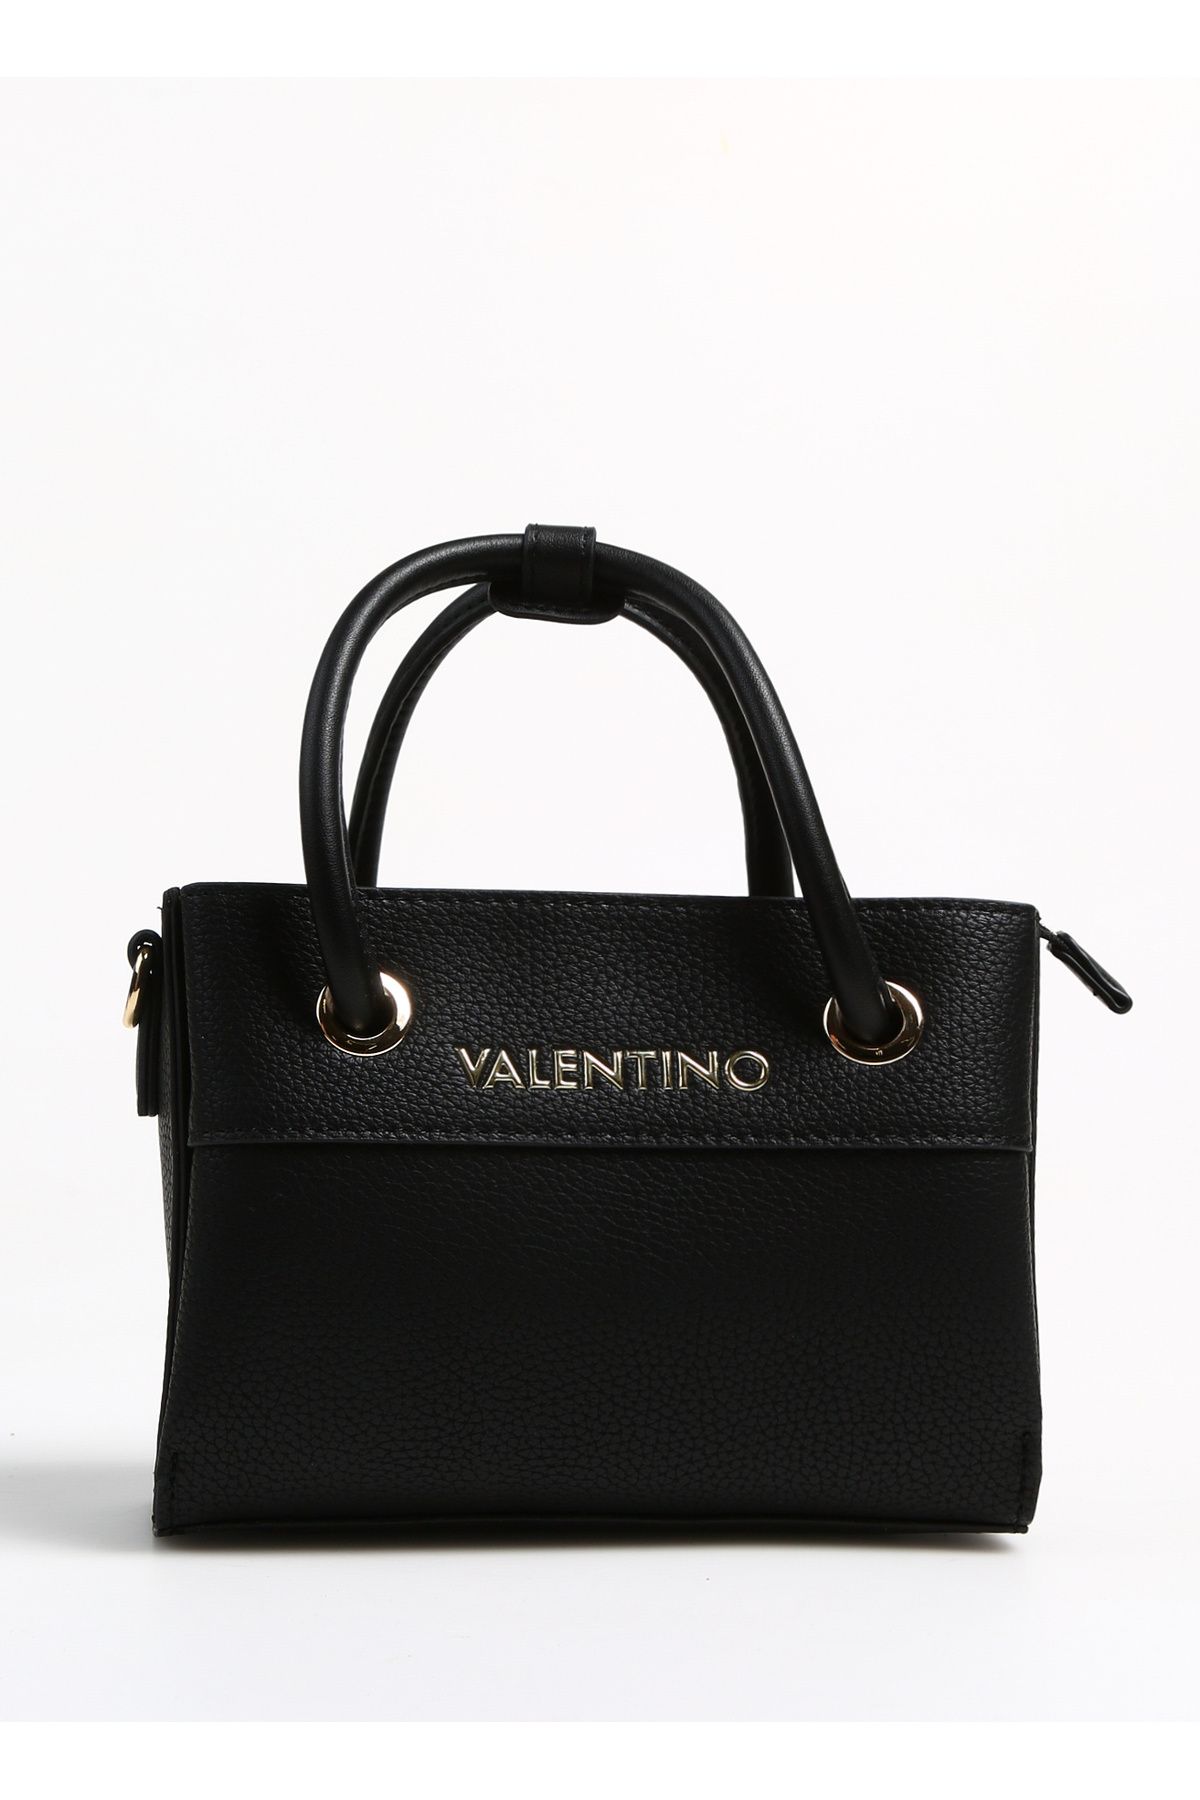 Valentino Siyah Kadın 21x15 x9 cm El Çantası VBS5A805001